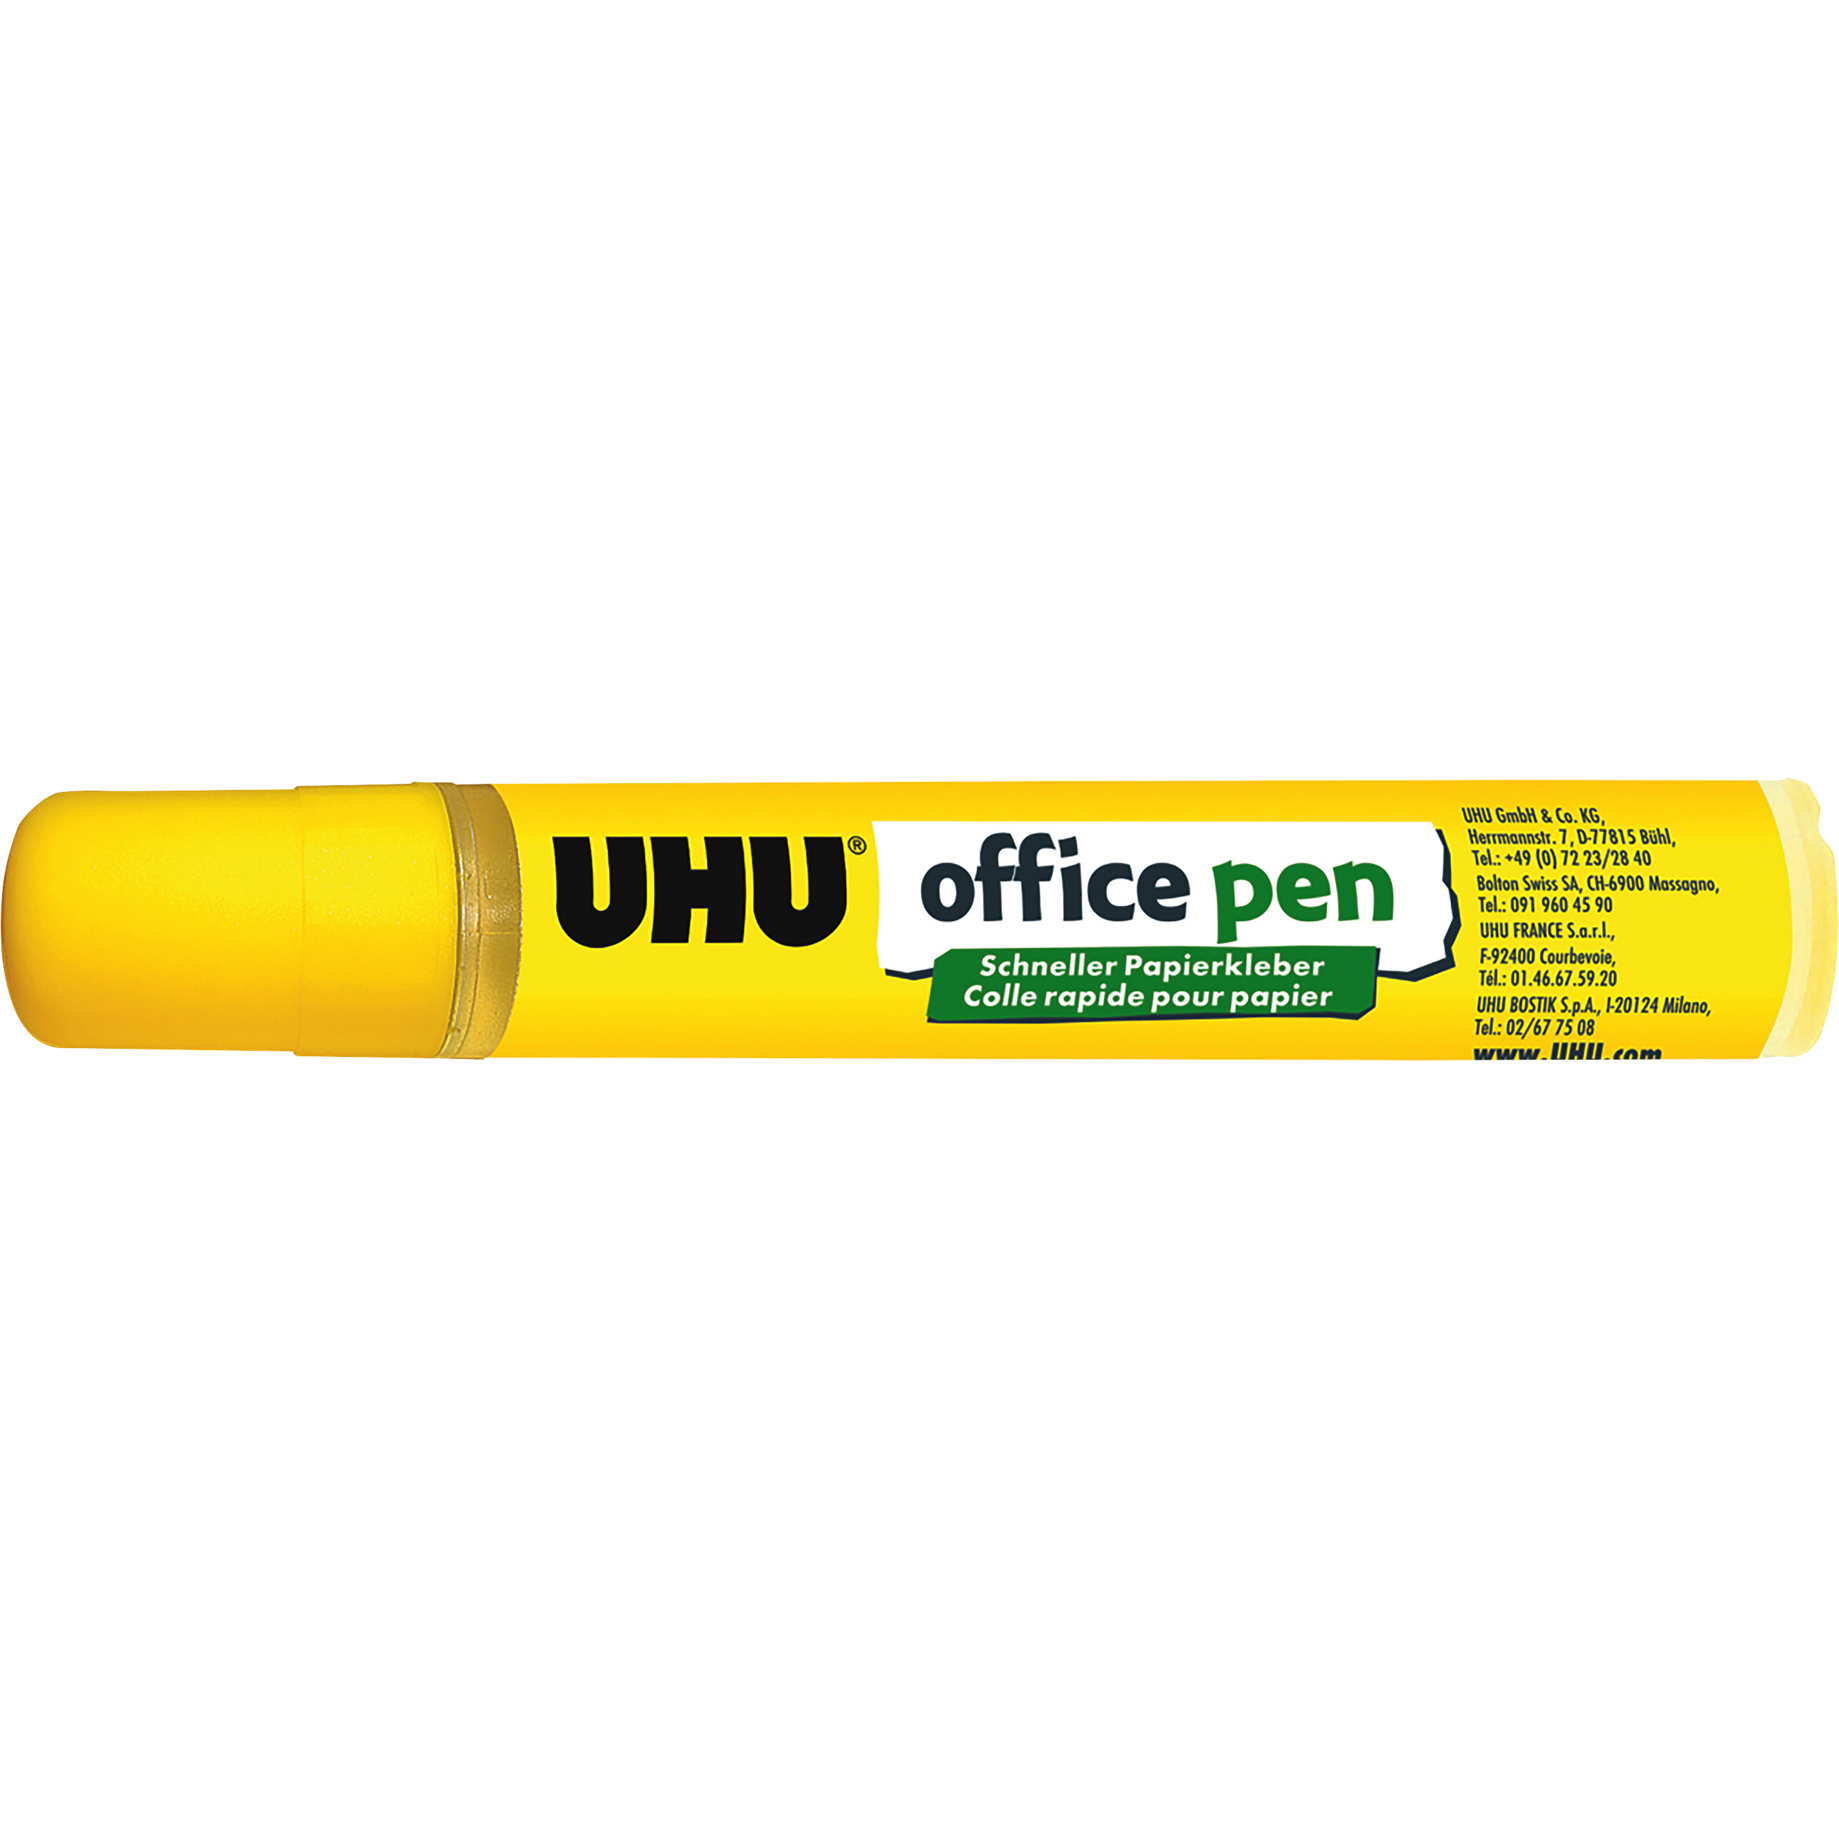 Office pen